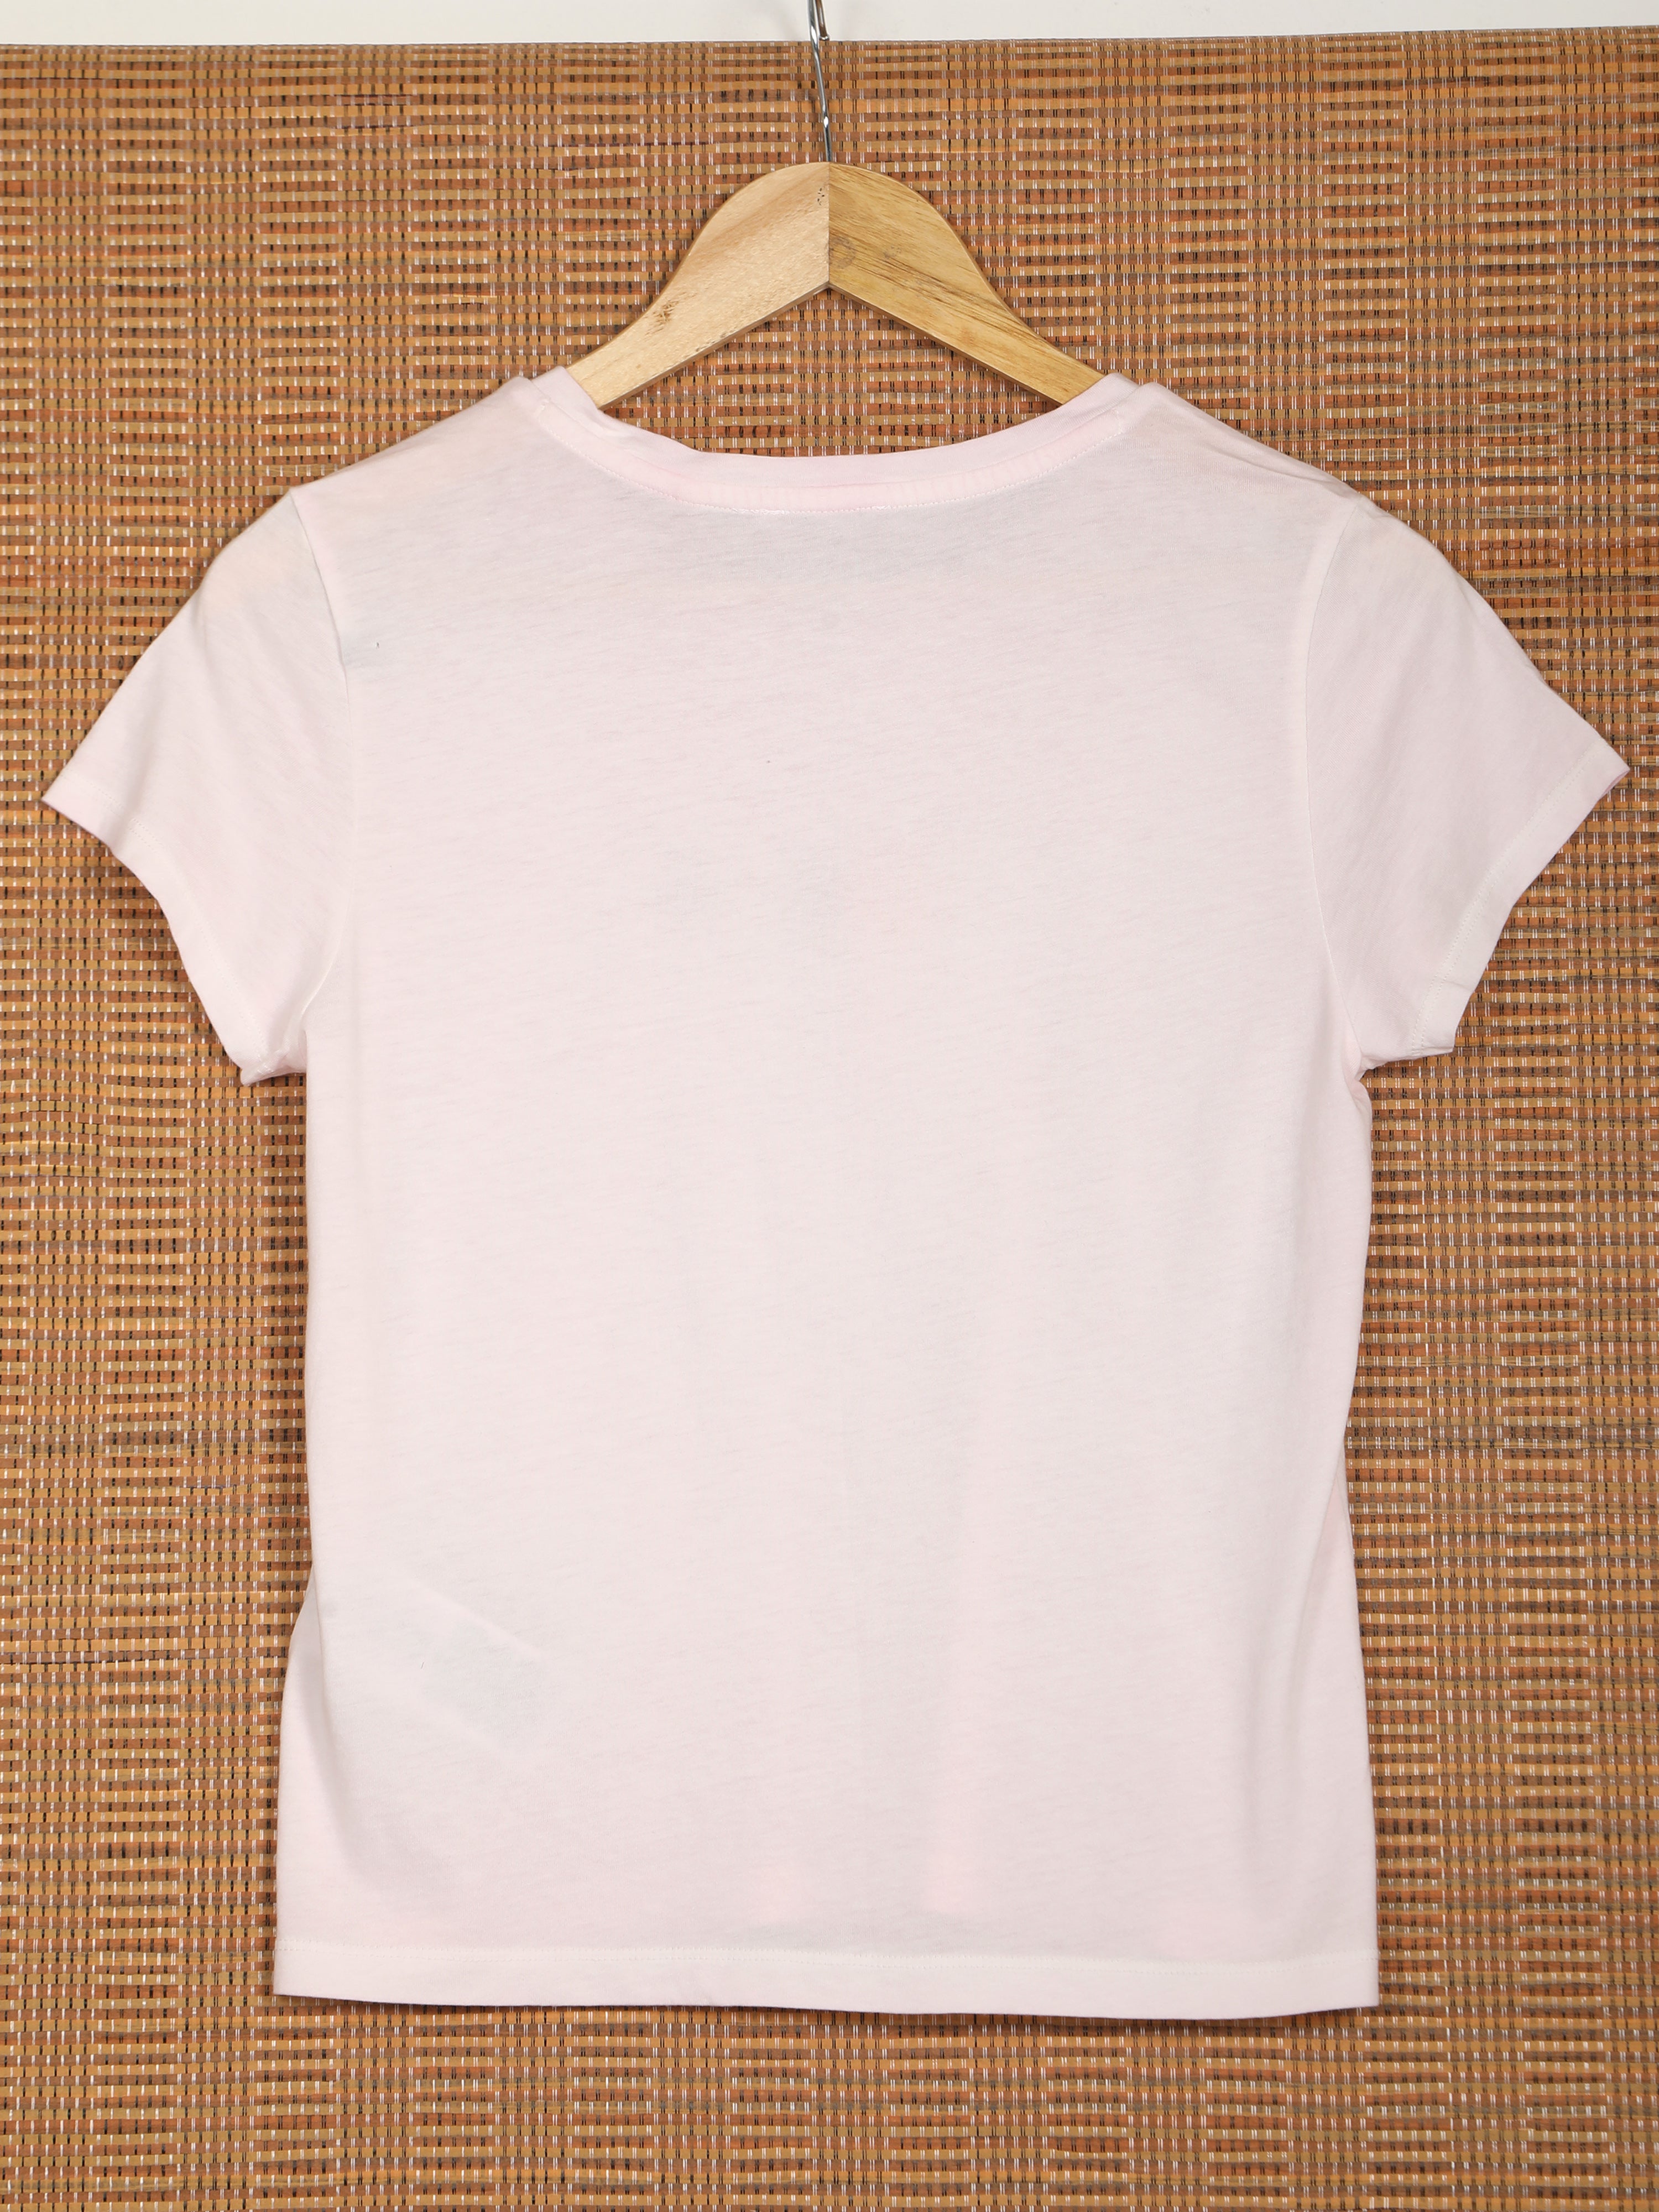 Women's Short Sleeve T-shirt-Light Pink,38